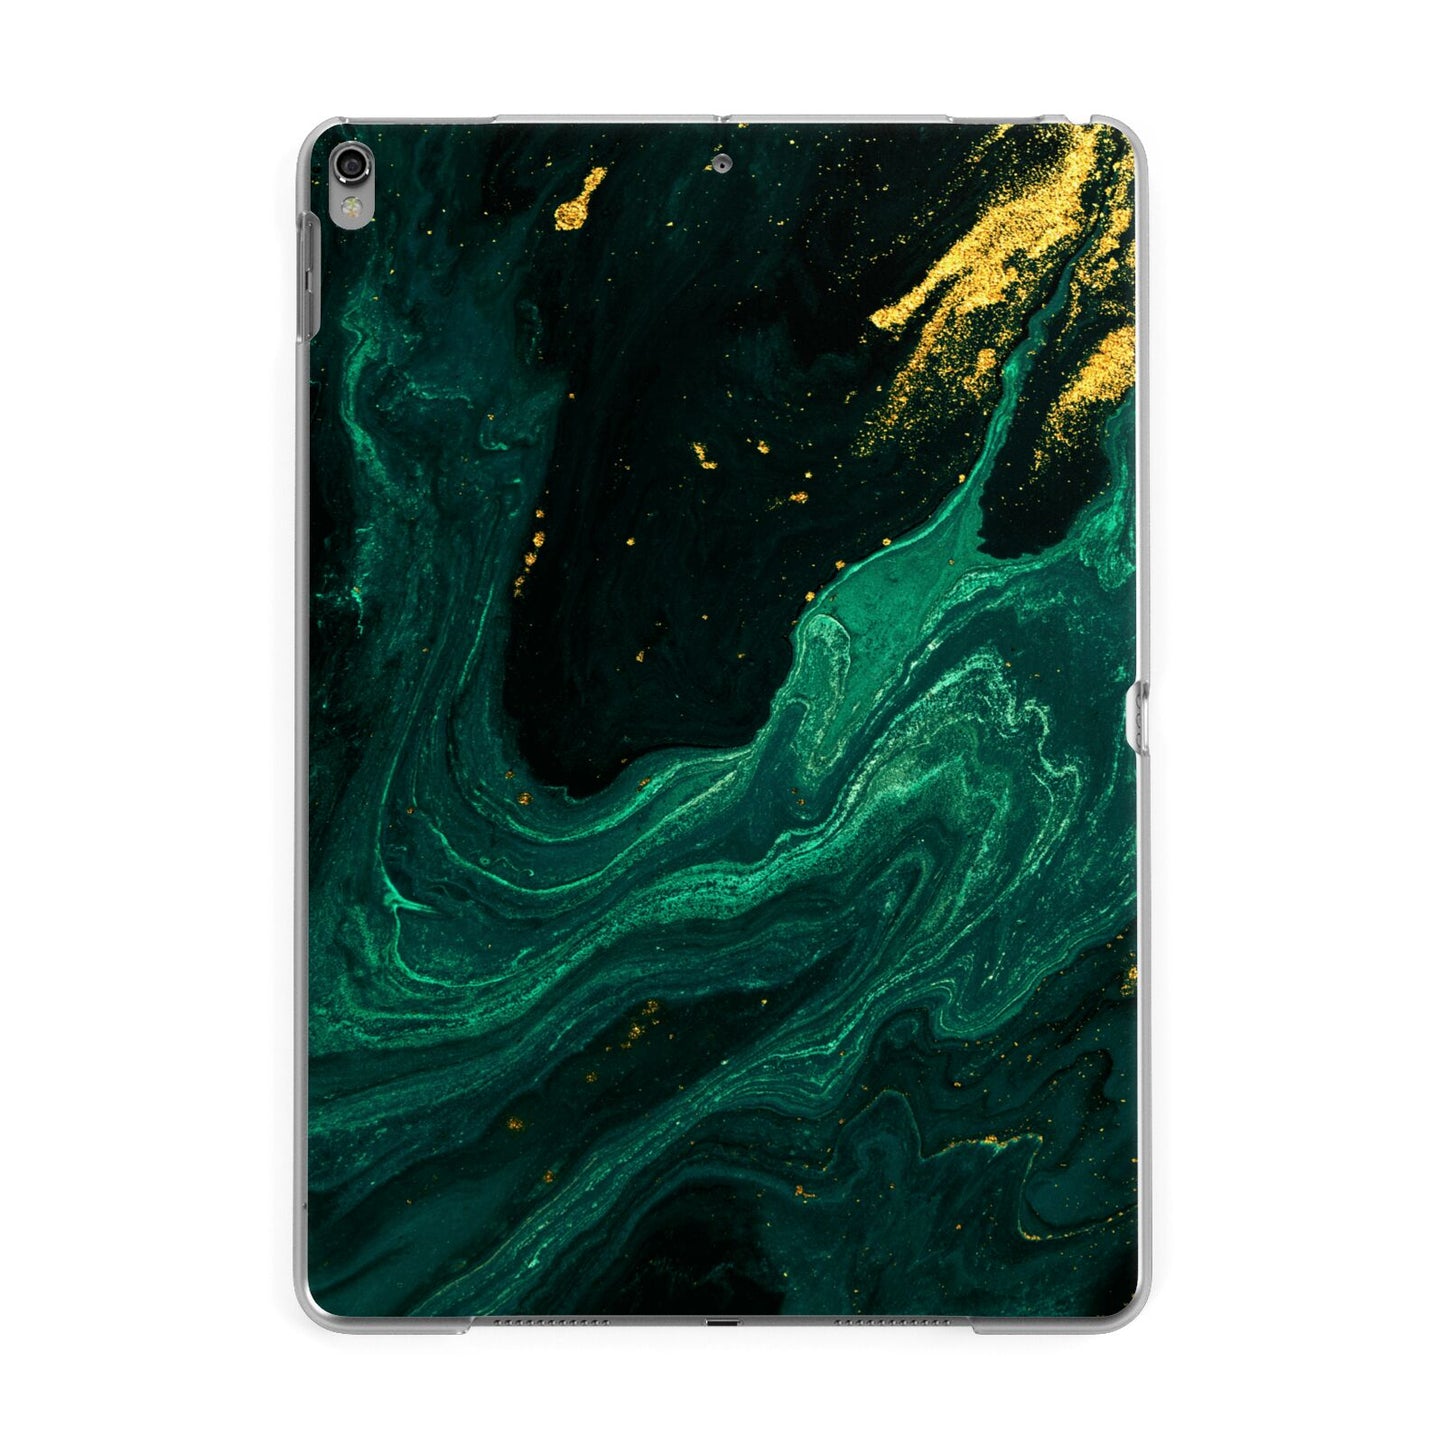 Emerald Green Apple iPad Grey Case